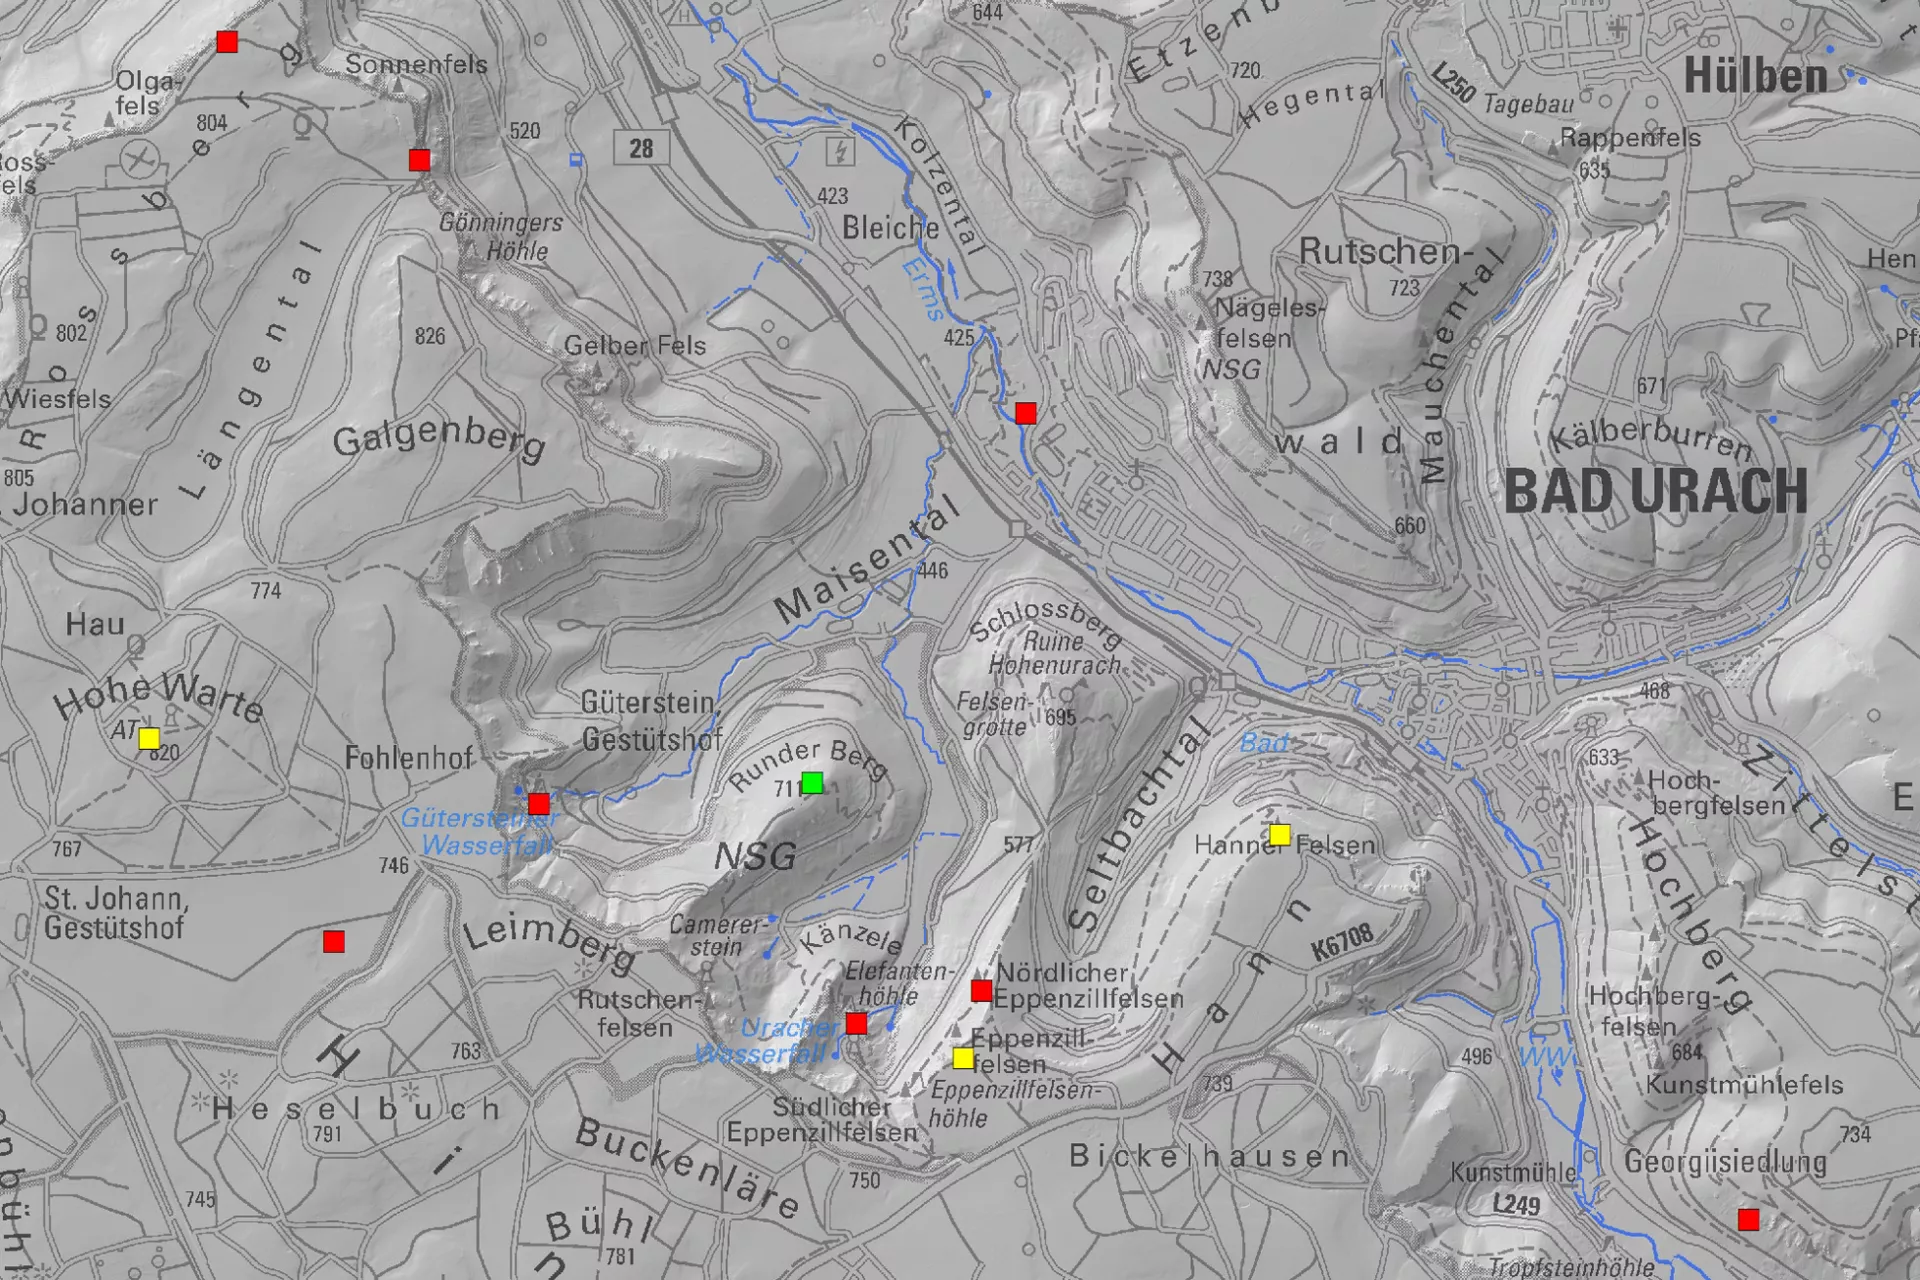 Topographische Karte und Reliefdarstellung vom Gebiet um Bad Urach. Es sind mehrere quadratische Symbole in verschiedenen Farben eingetragen. 